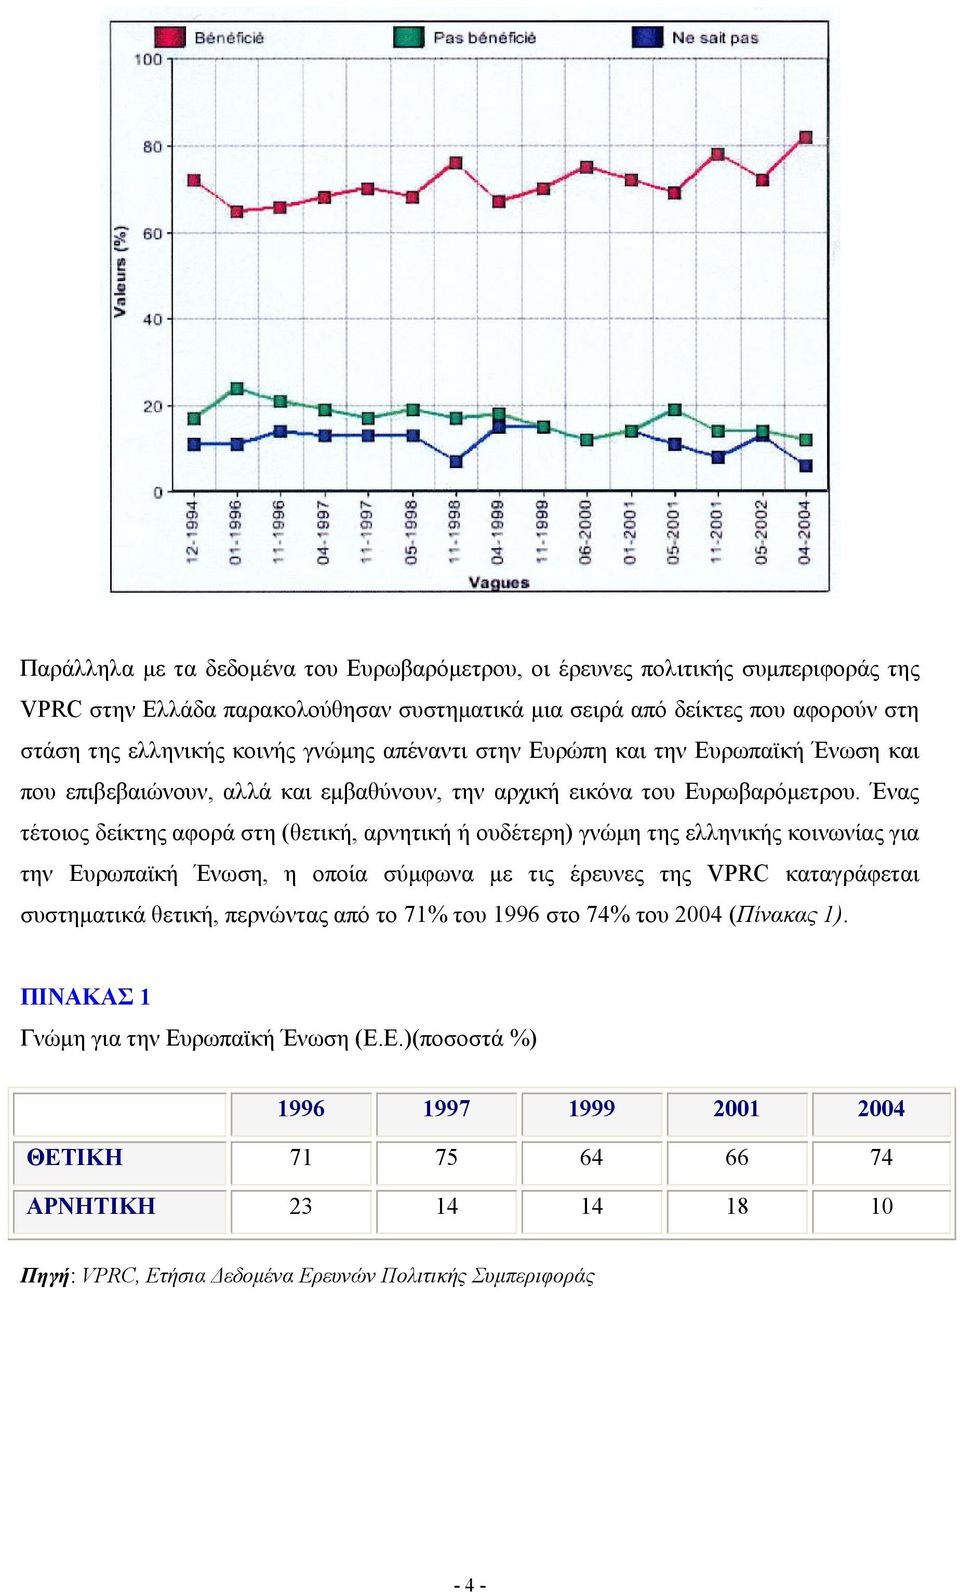 Ένας τέτοιος δείκτης αφορά στη (θετική, αρνητική ή ουδέτερη) γνώμη της ελληνικής κοινωνίας για την Ευρωπαϊκή Ένωση, η οποία σύμφωνα με τις έρευνες της VPRC καταγράφεται συστηματικά θετική,